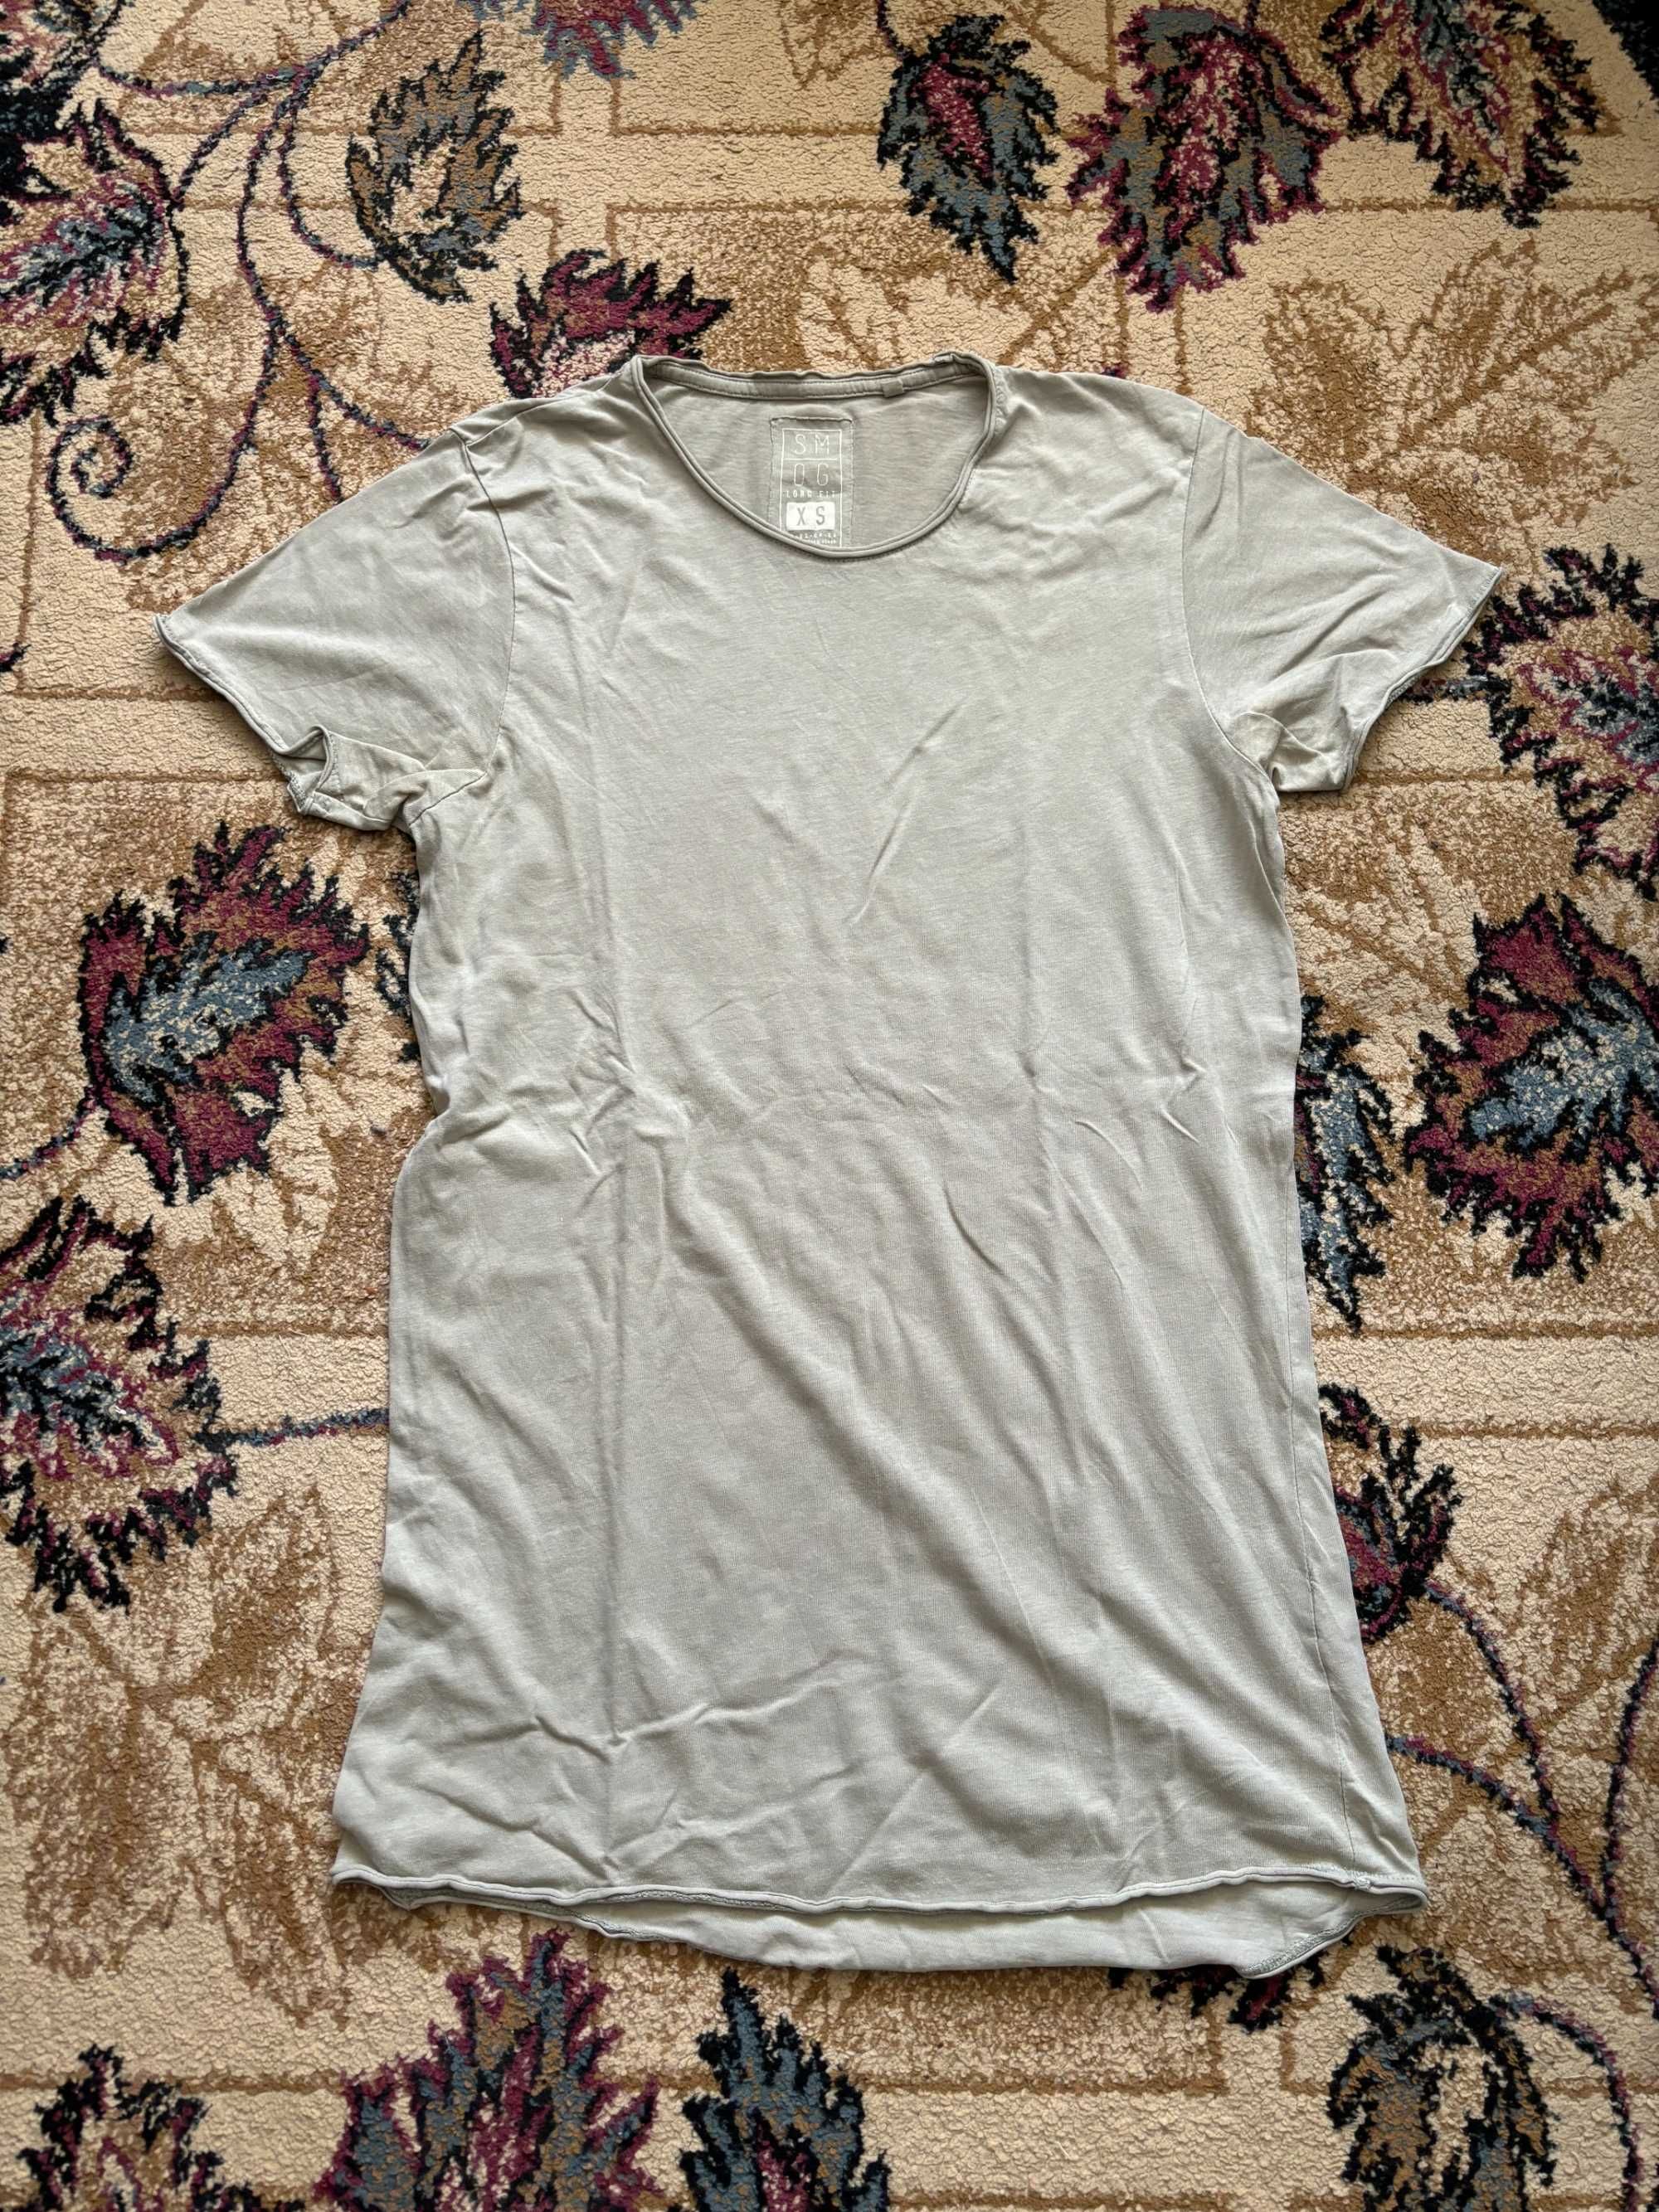 Tricouri Barbati cu imprimeu CROPP H&M Marime S-M -EUR38-40-